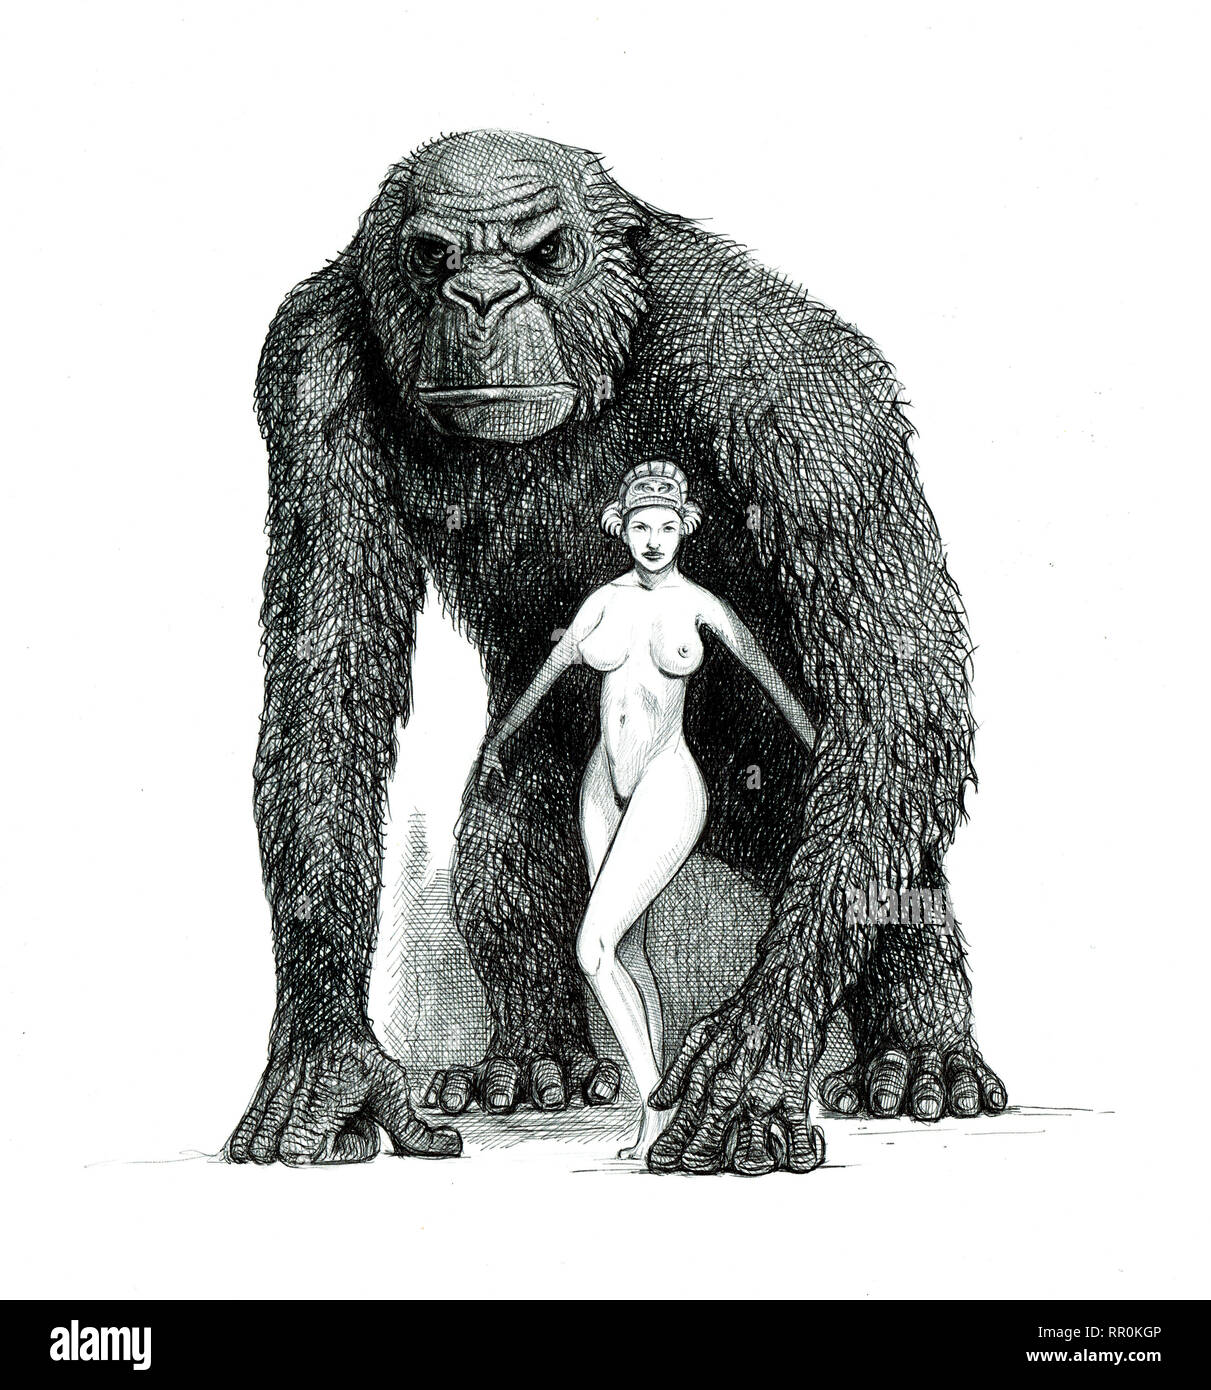 Big ape avec girl illustration. Singes gorilles dessin. Banque D'Images